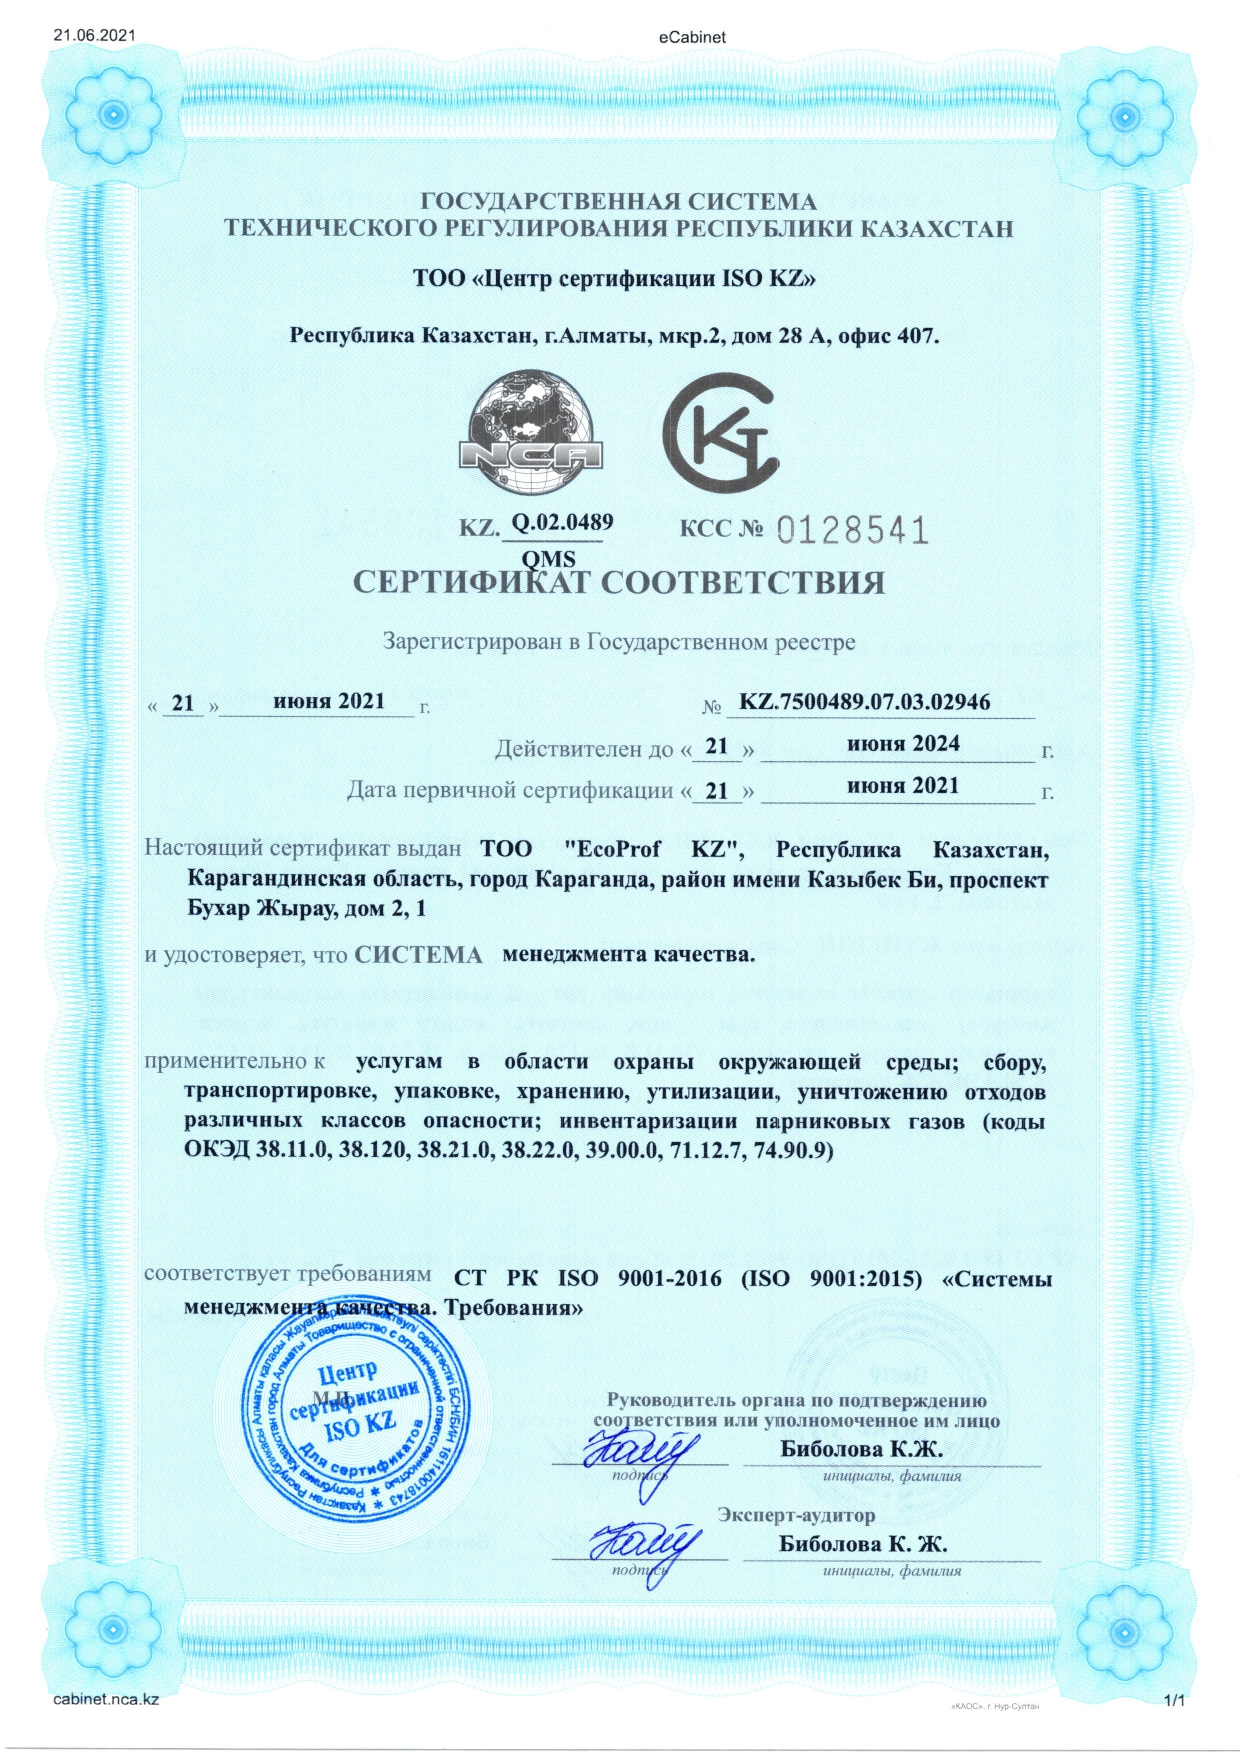 Сертификат соответствия СТ РК ISO 9001-2016 "Система менеджмента качества. Требования"